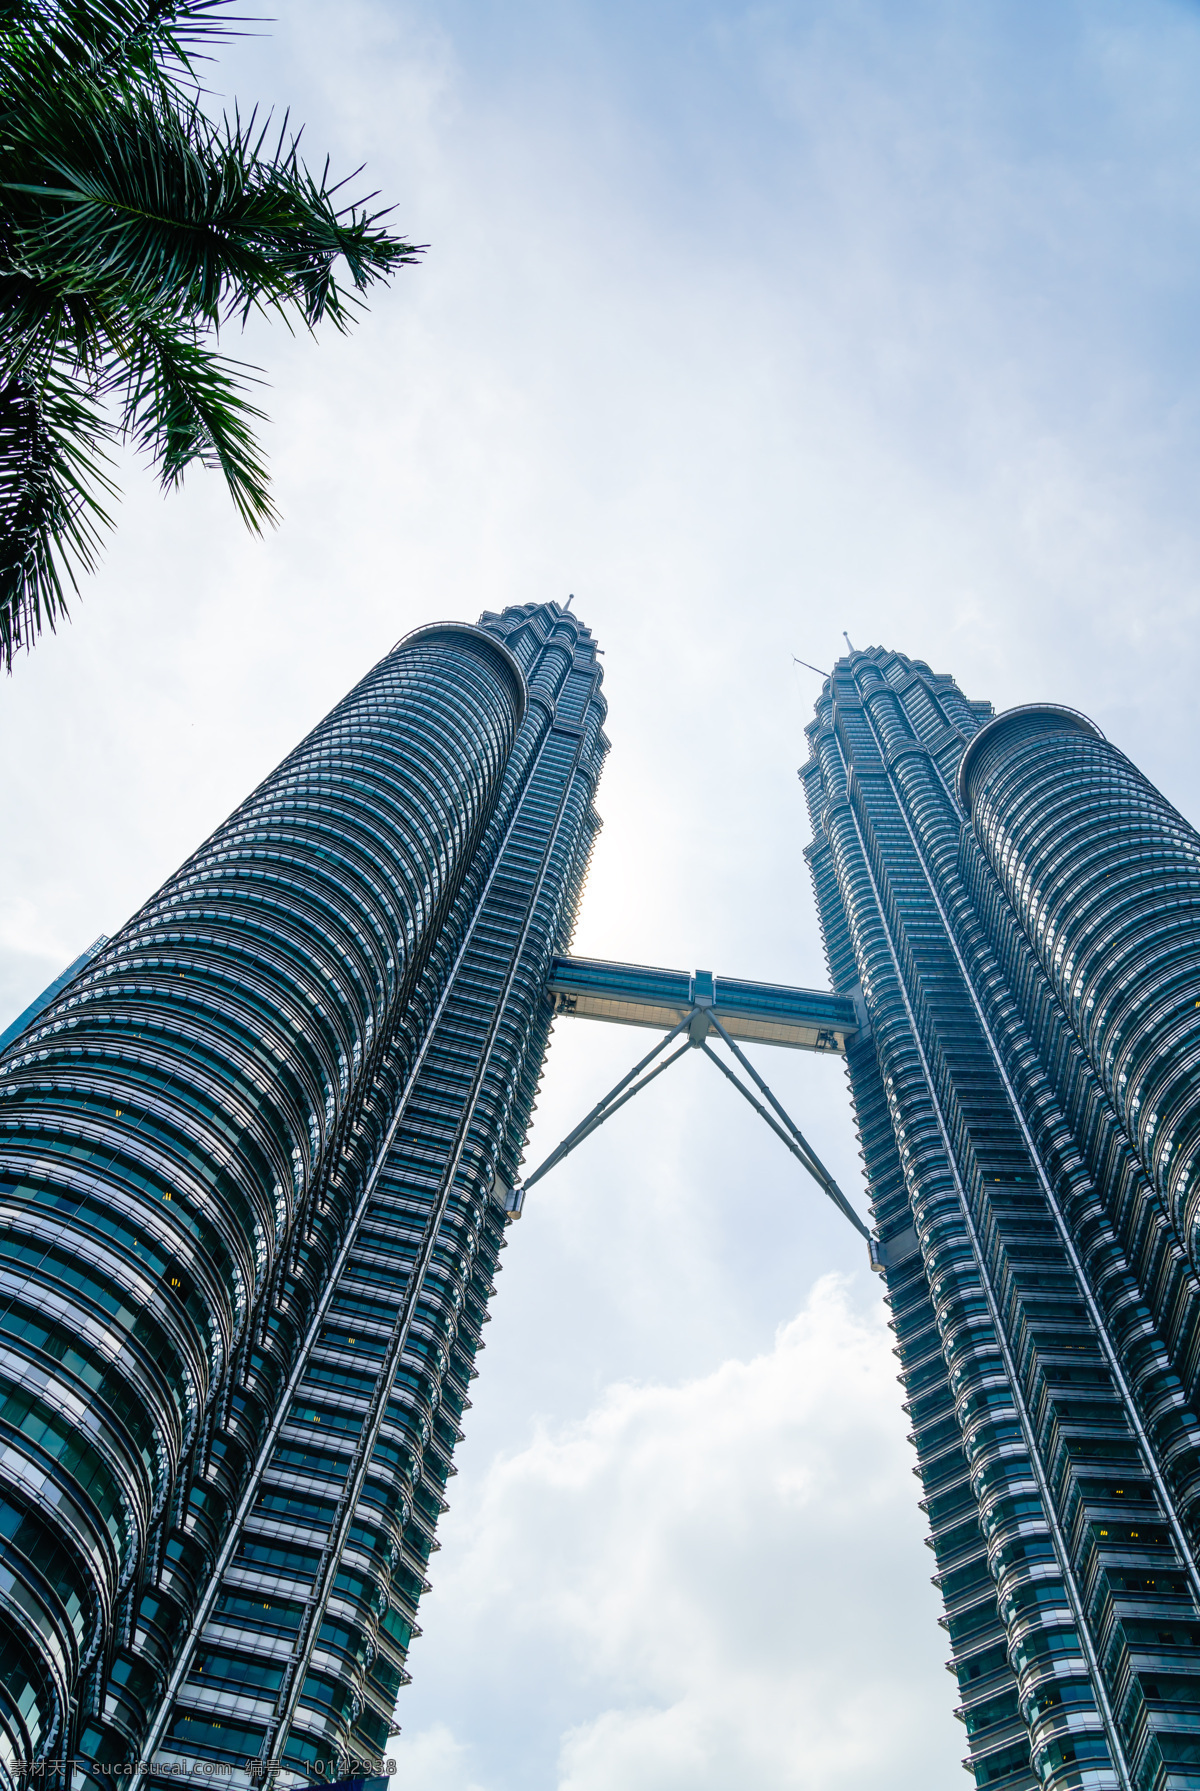 马来西亚 吉隆坡 双子塔 旅游摄影 国外旅游 建筑摄影 风景